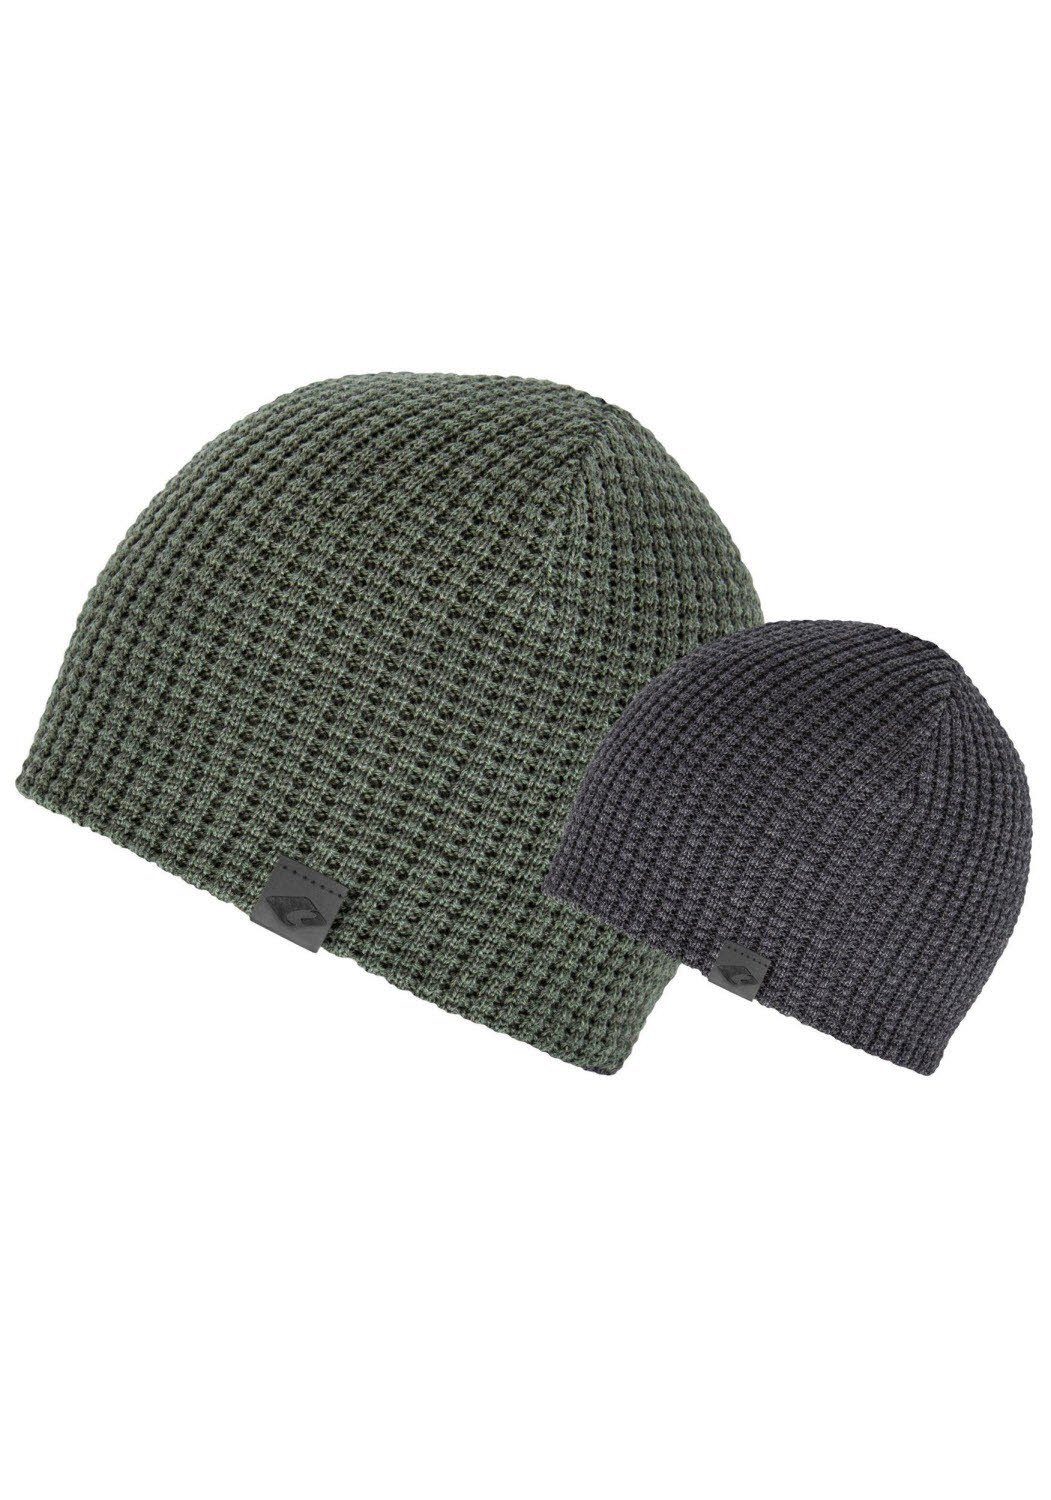 chillouts Beanie Matthew Hat, olive-dark-grey